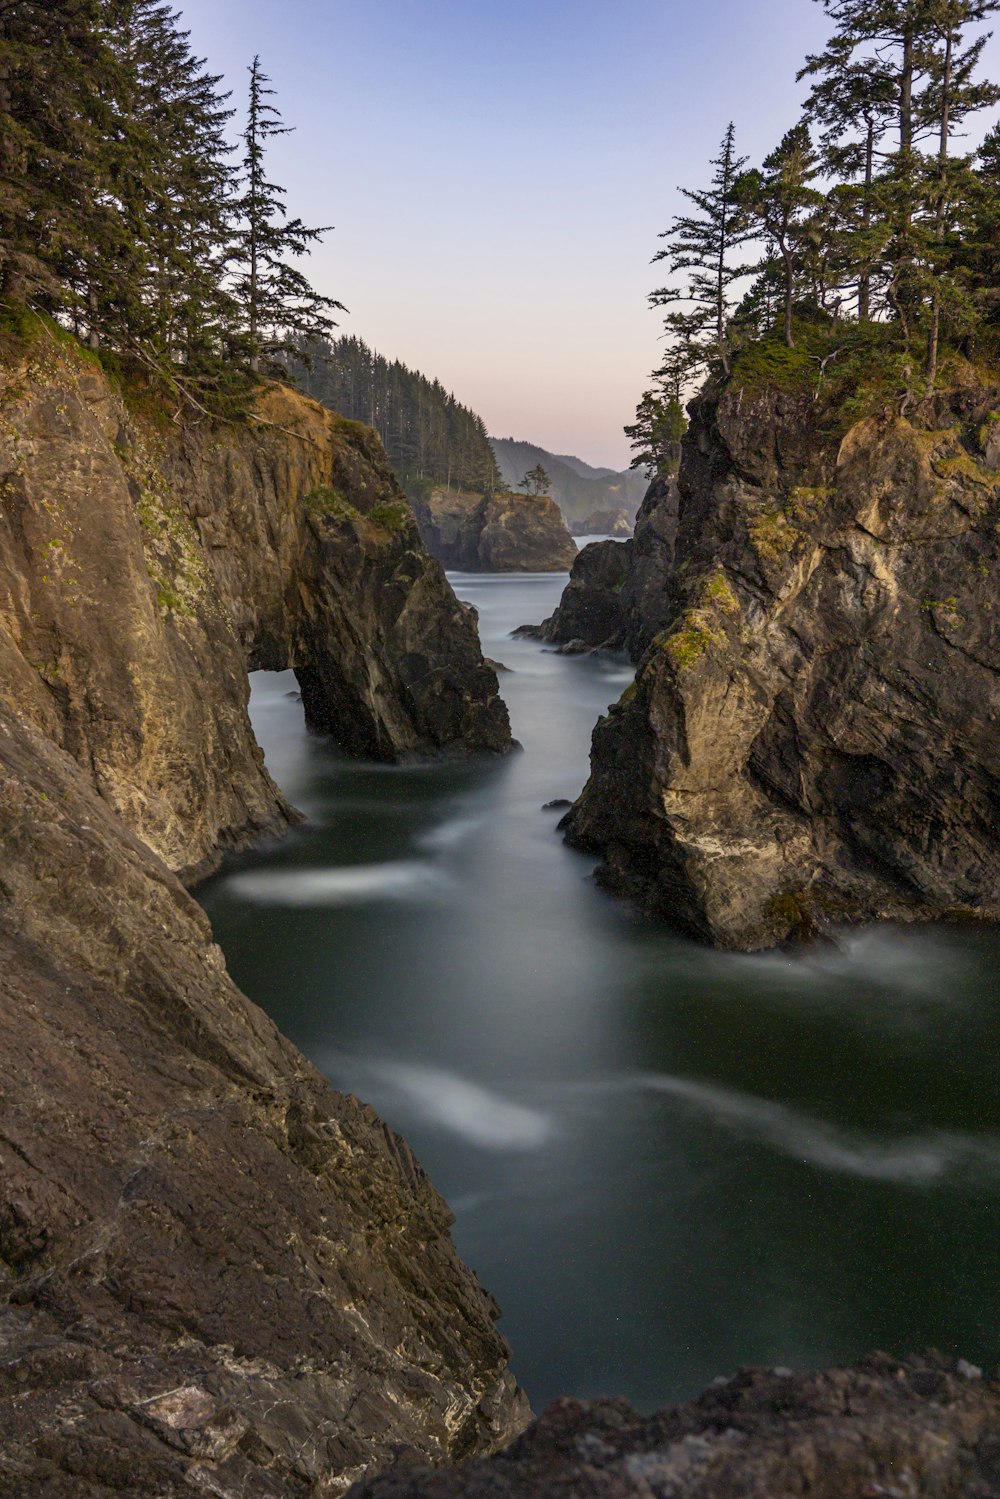 a river flowing between rocky cliffs